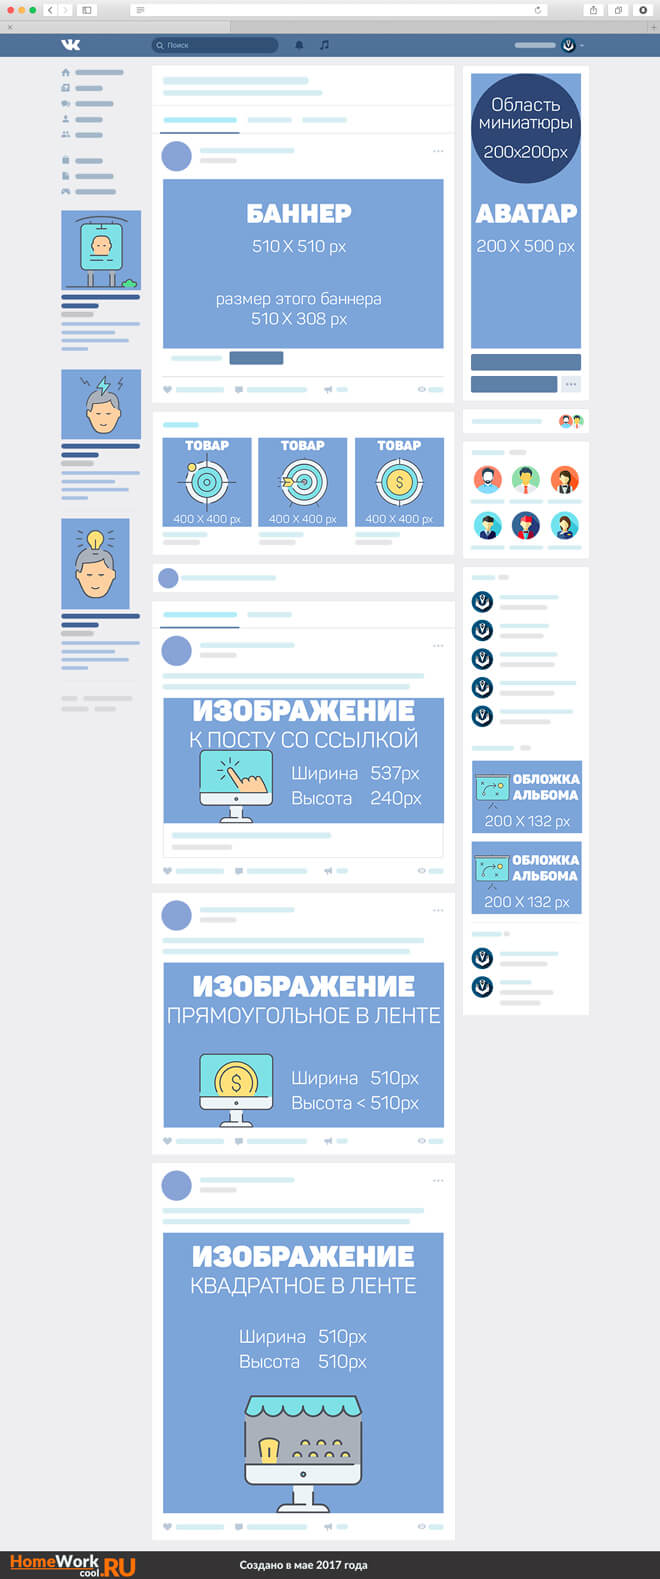 Размеры аватарки и баннера для группы Вконтакте